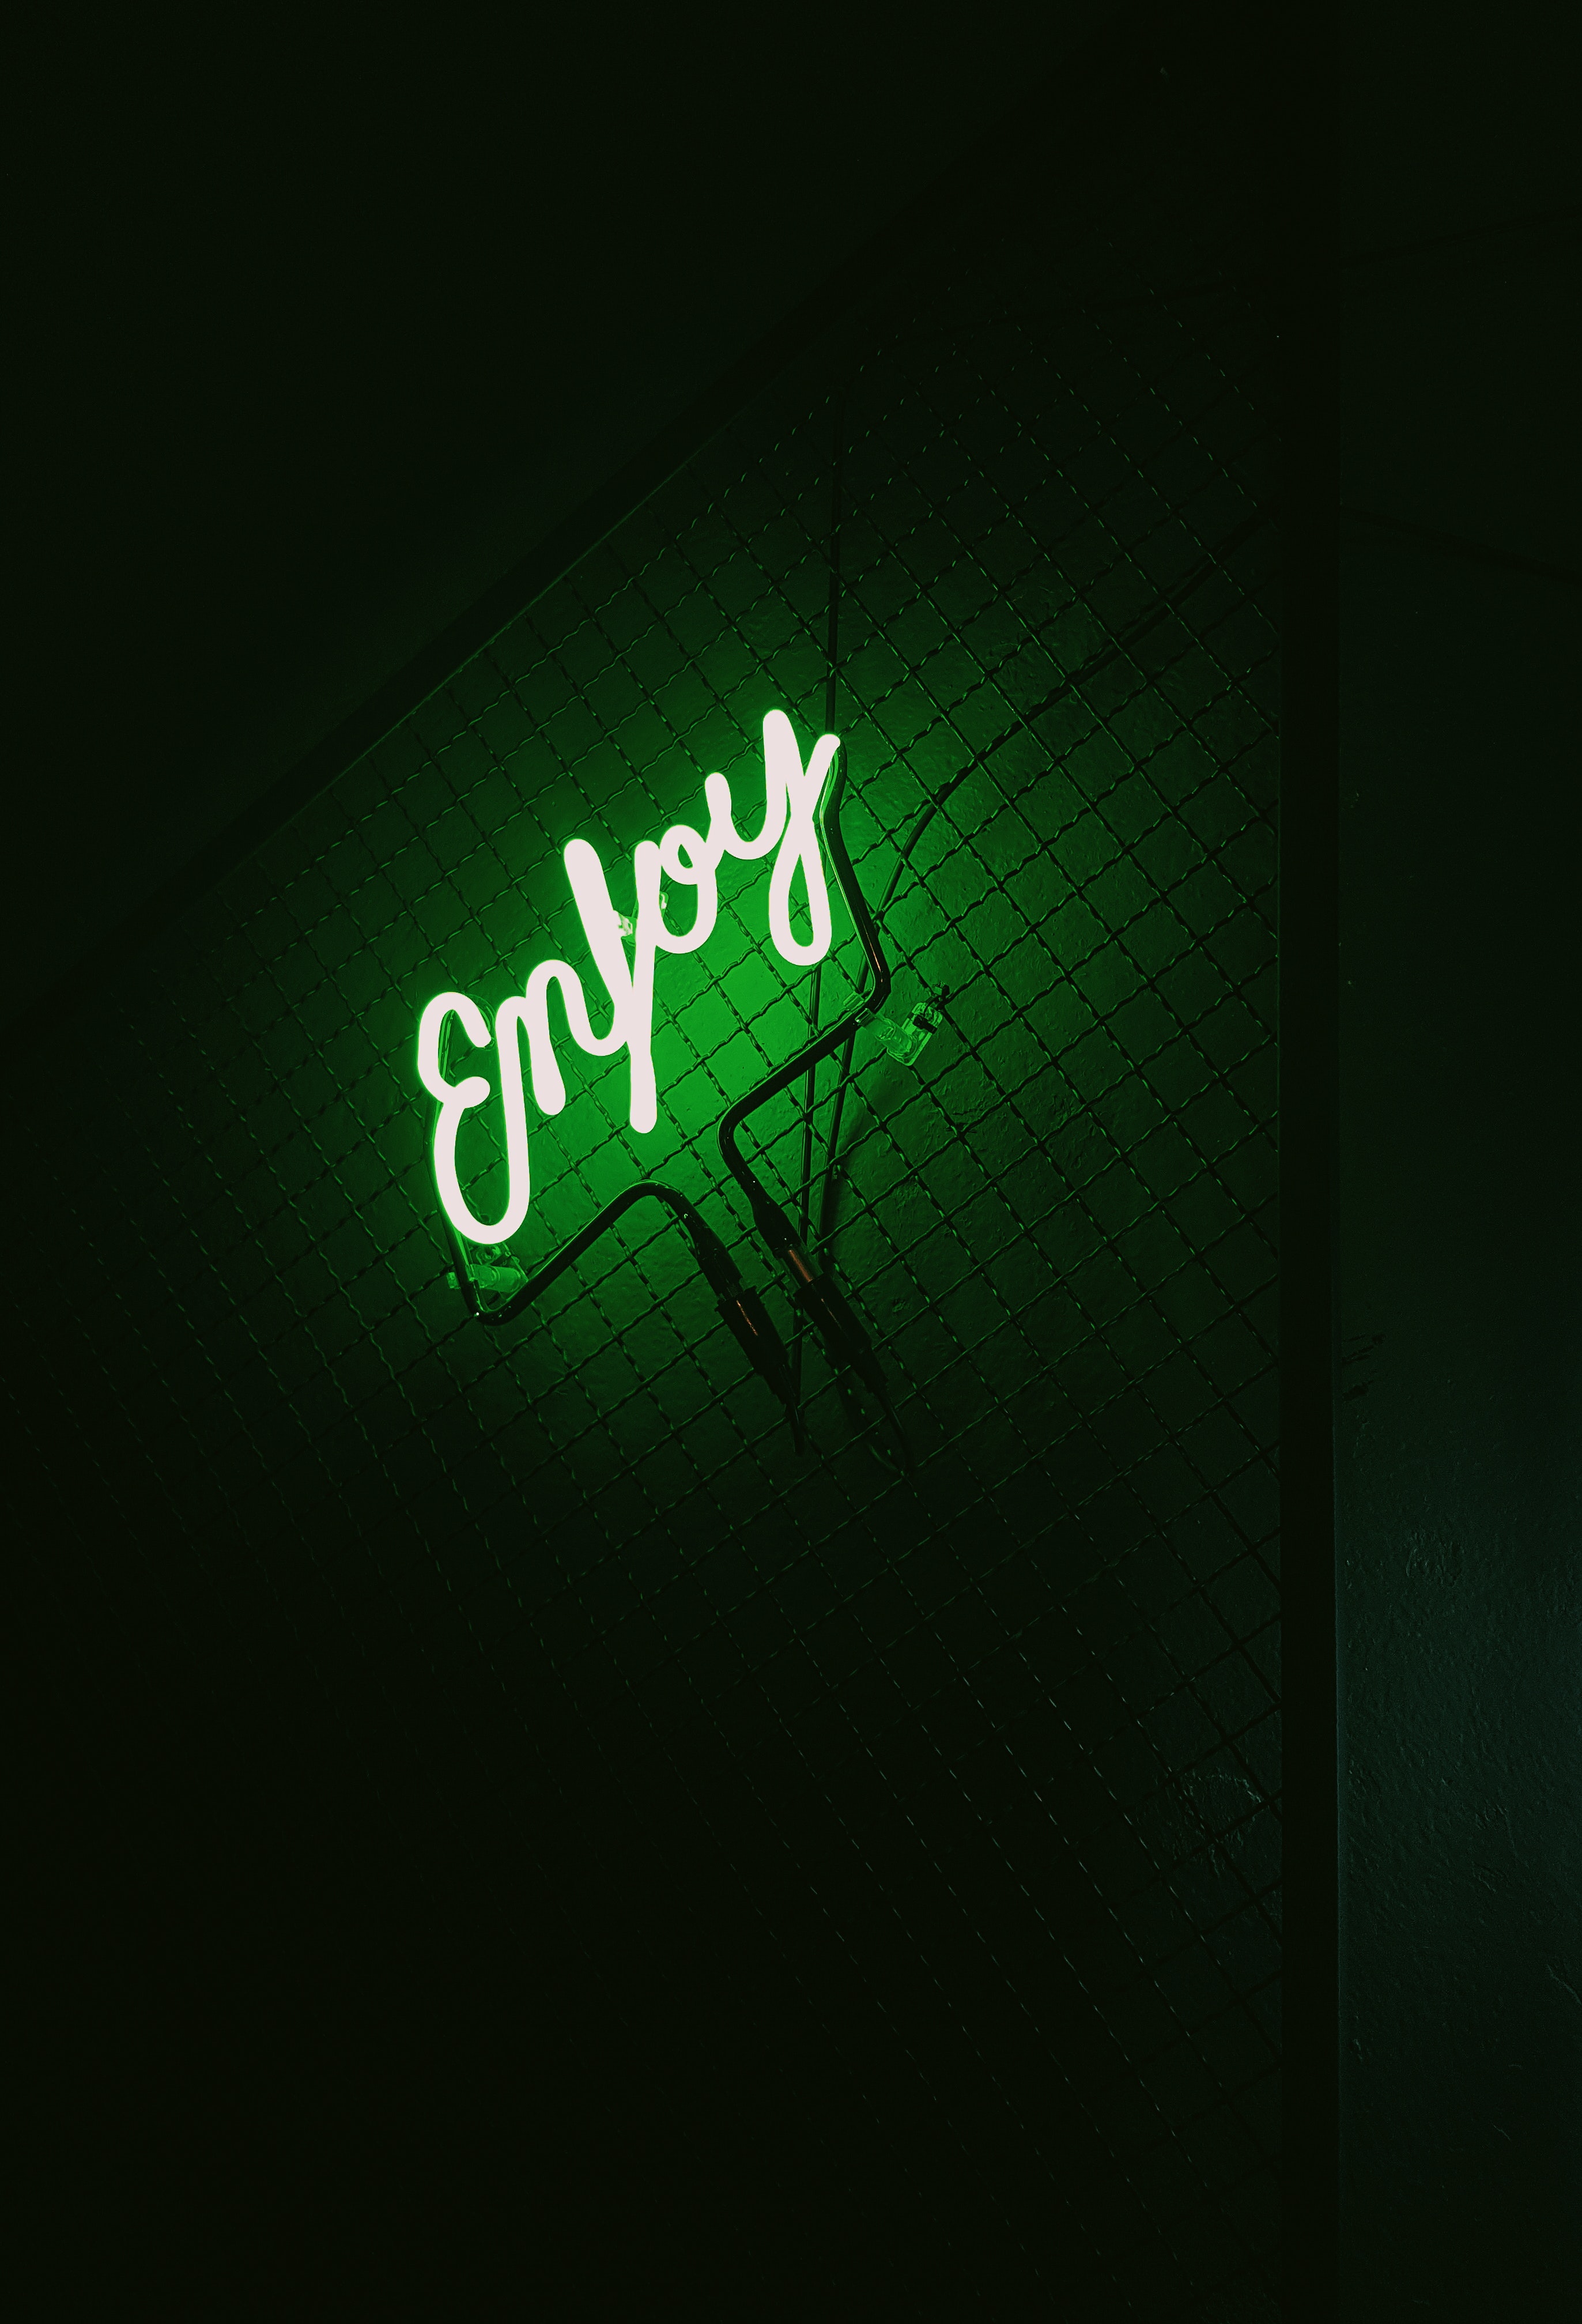 backlight, words, dark, neon, green, illumination, inscription